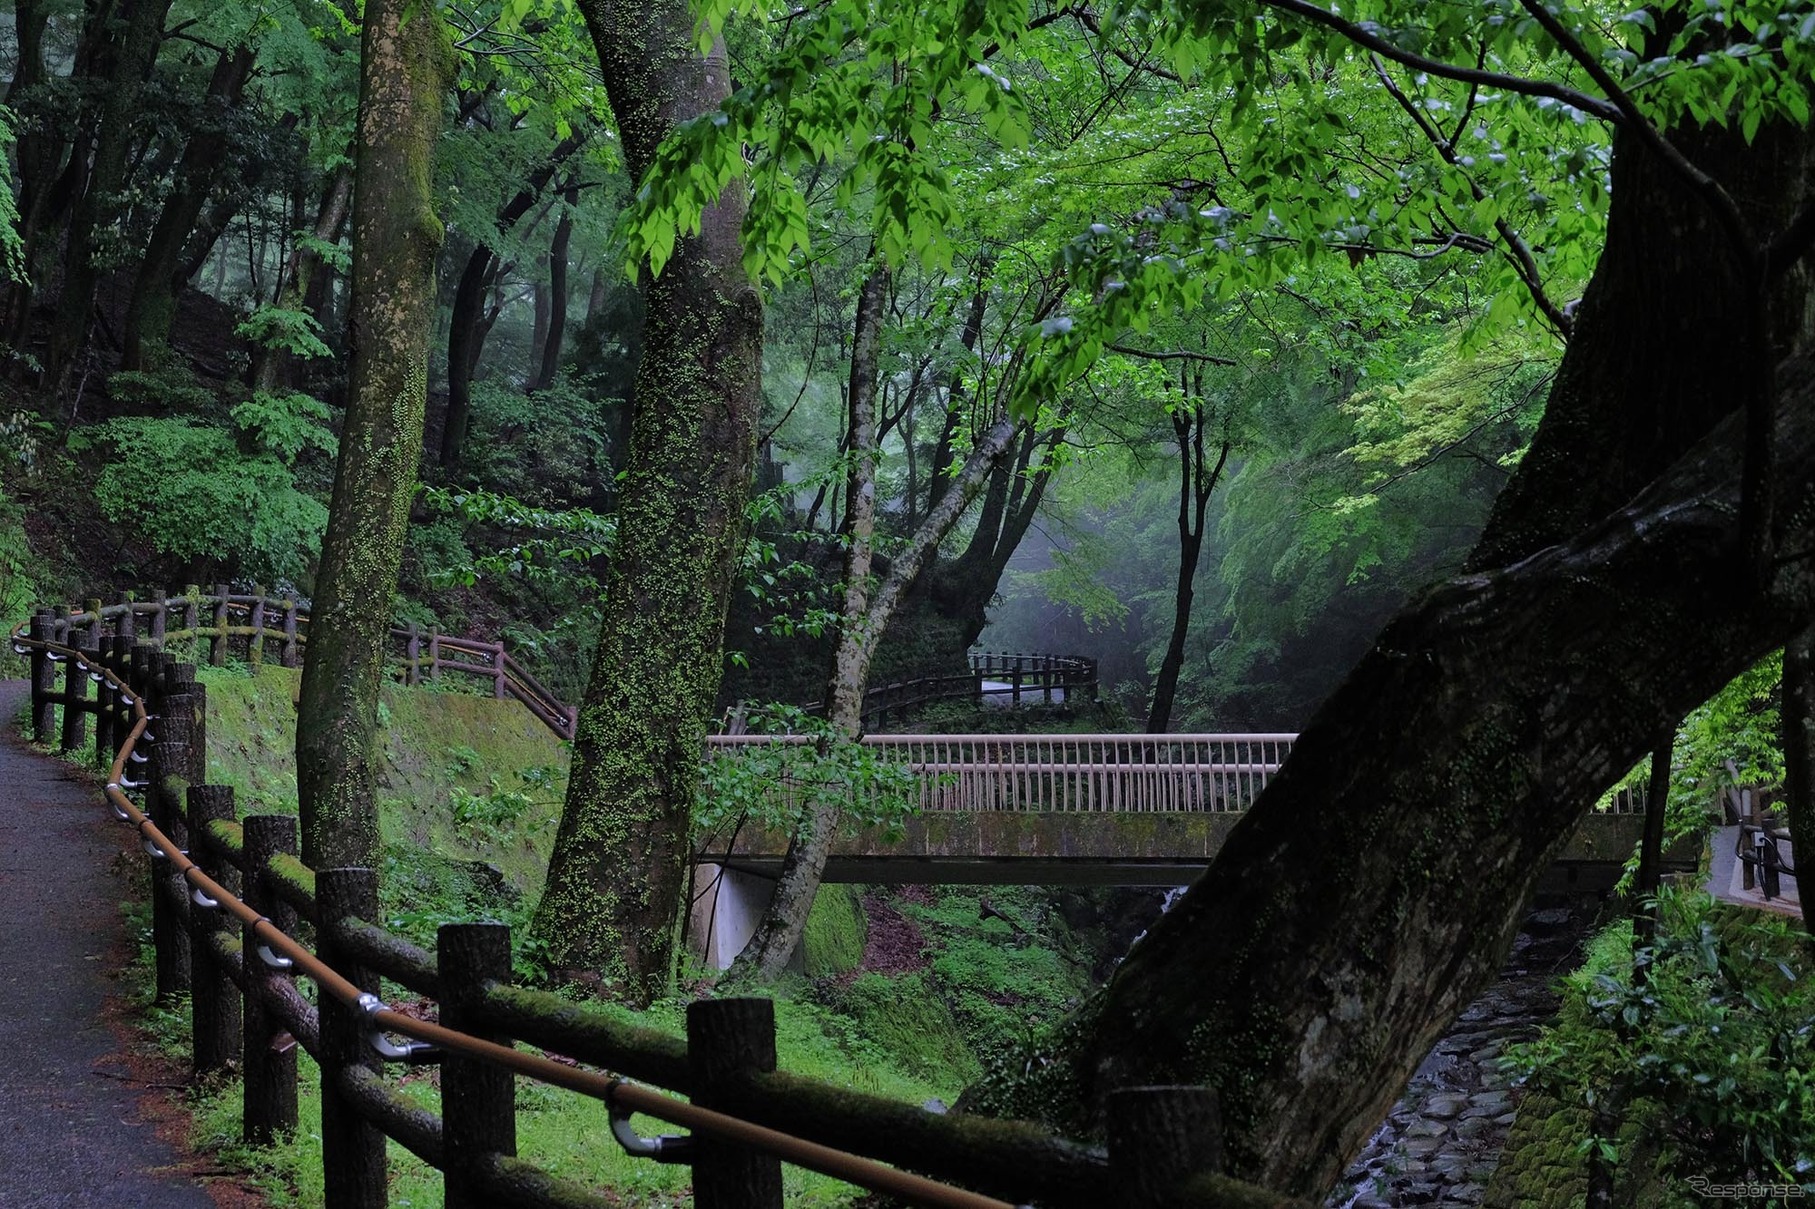 養老の滝までの遊歩道は森林浴的気持ちよさだった。